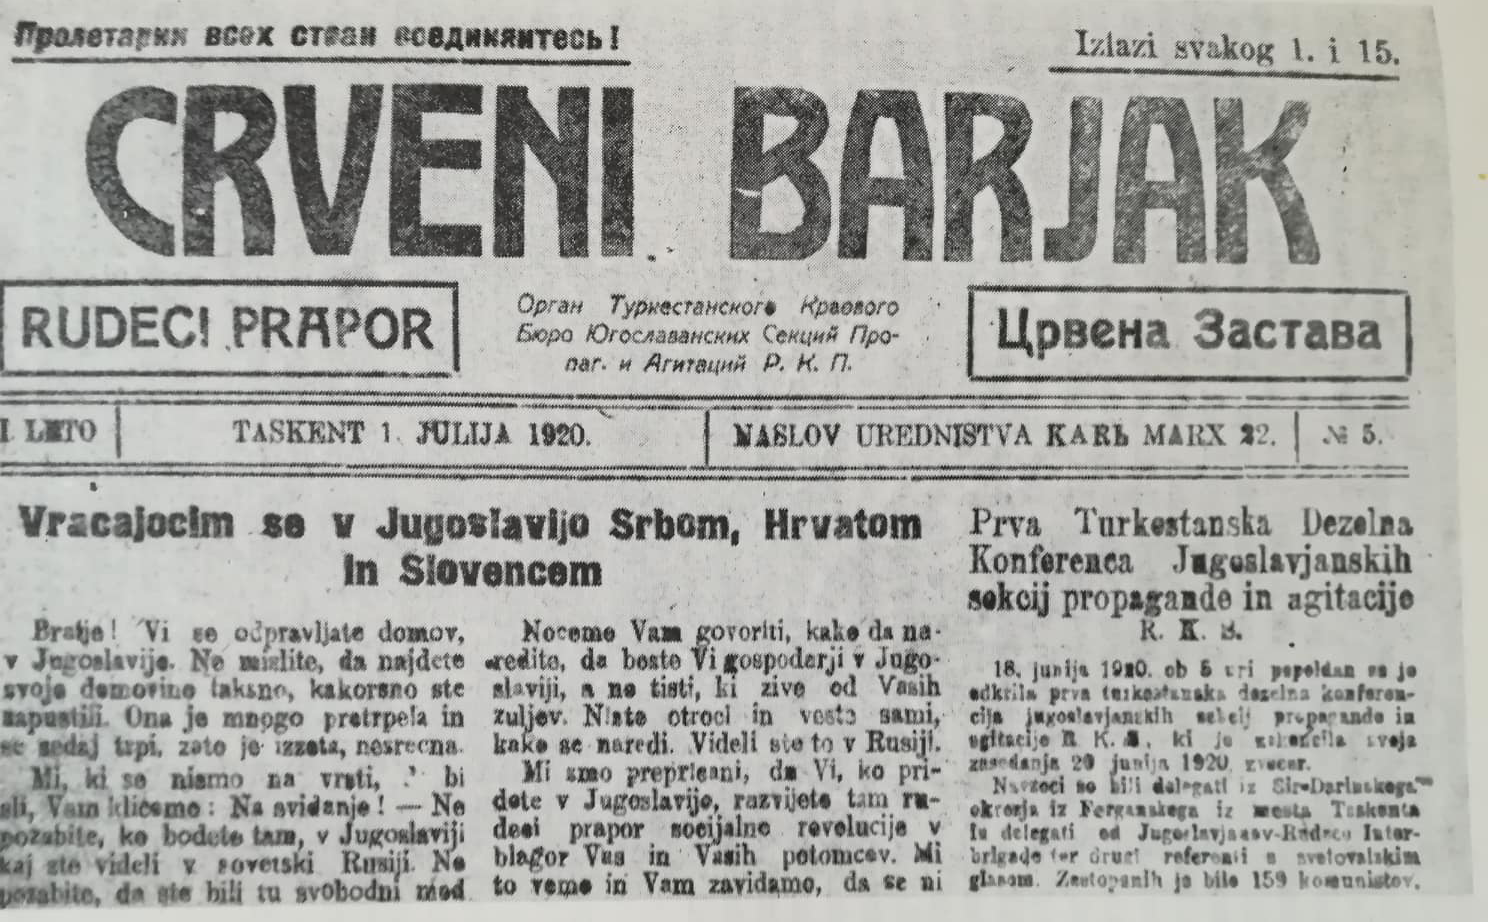 Faksimile zgornje polovice prve strani jugoslovanskega štirinajstdnevnika Crveni barjak - Rdeči prapor, ki je izhajal leta 1920 v Taškentu (današnji Uzbekistan) v slovenskem in srbohrvaškem jeziku